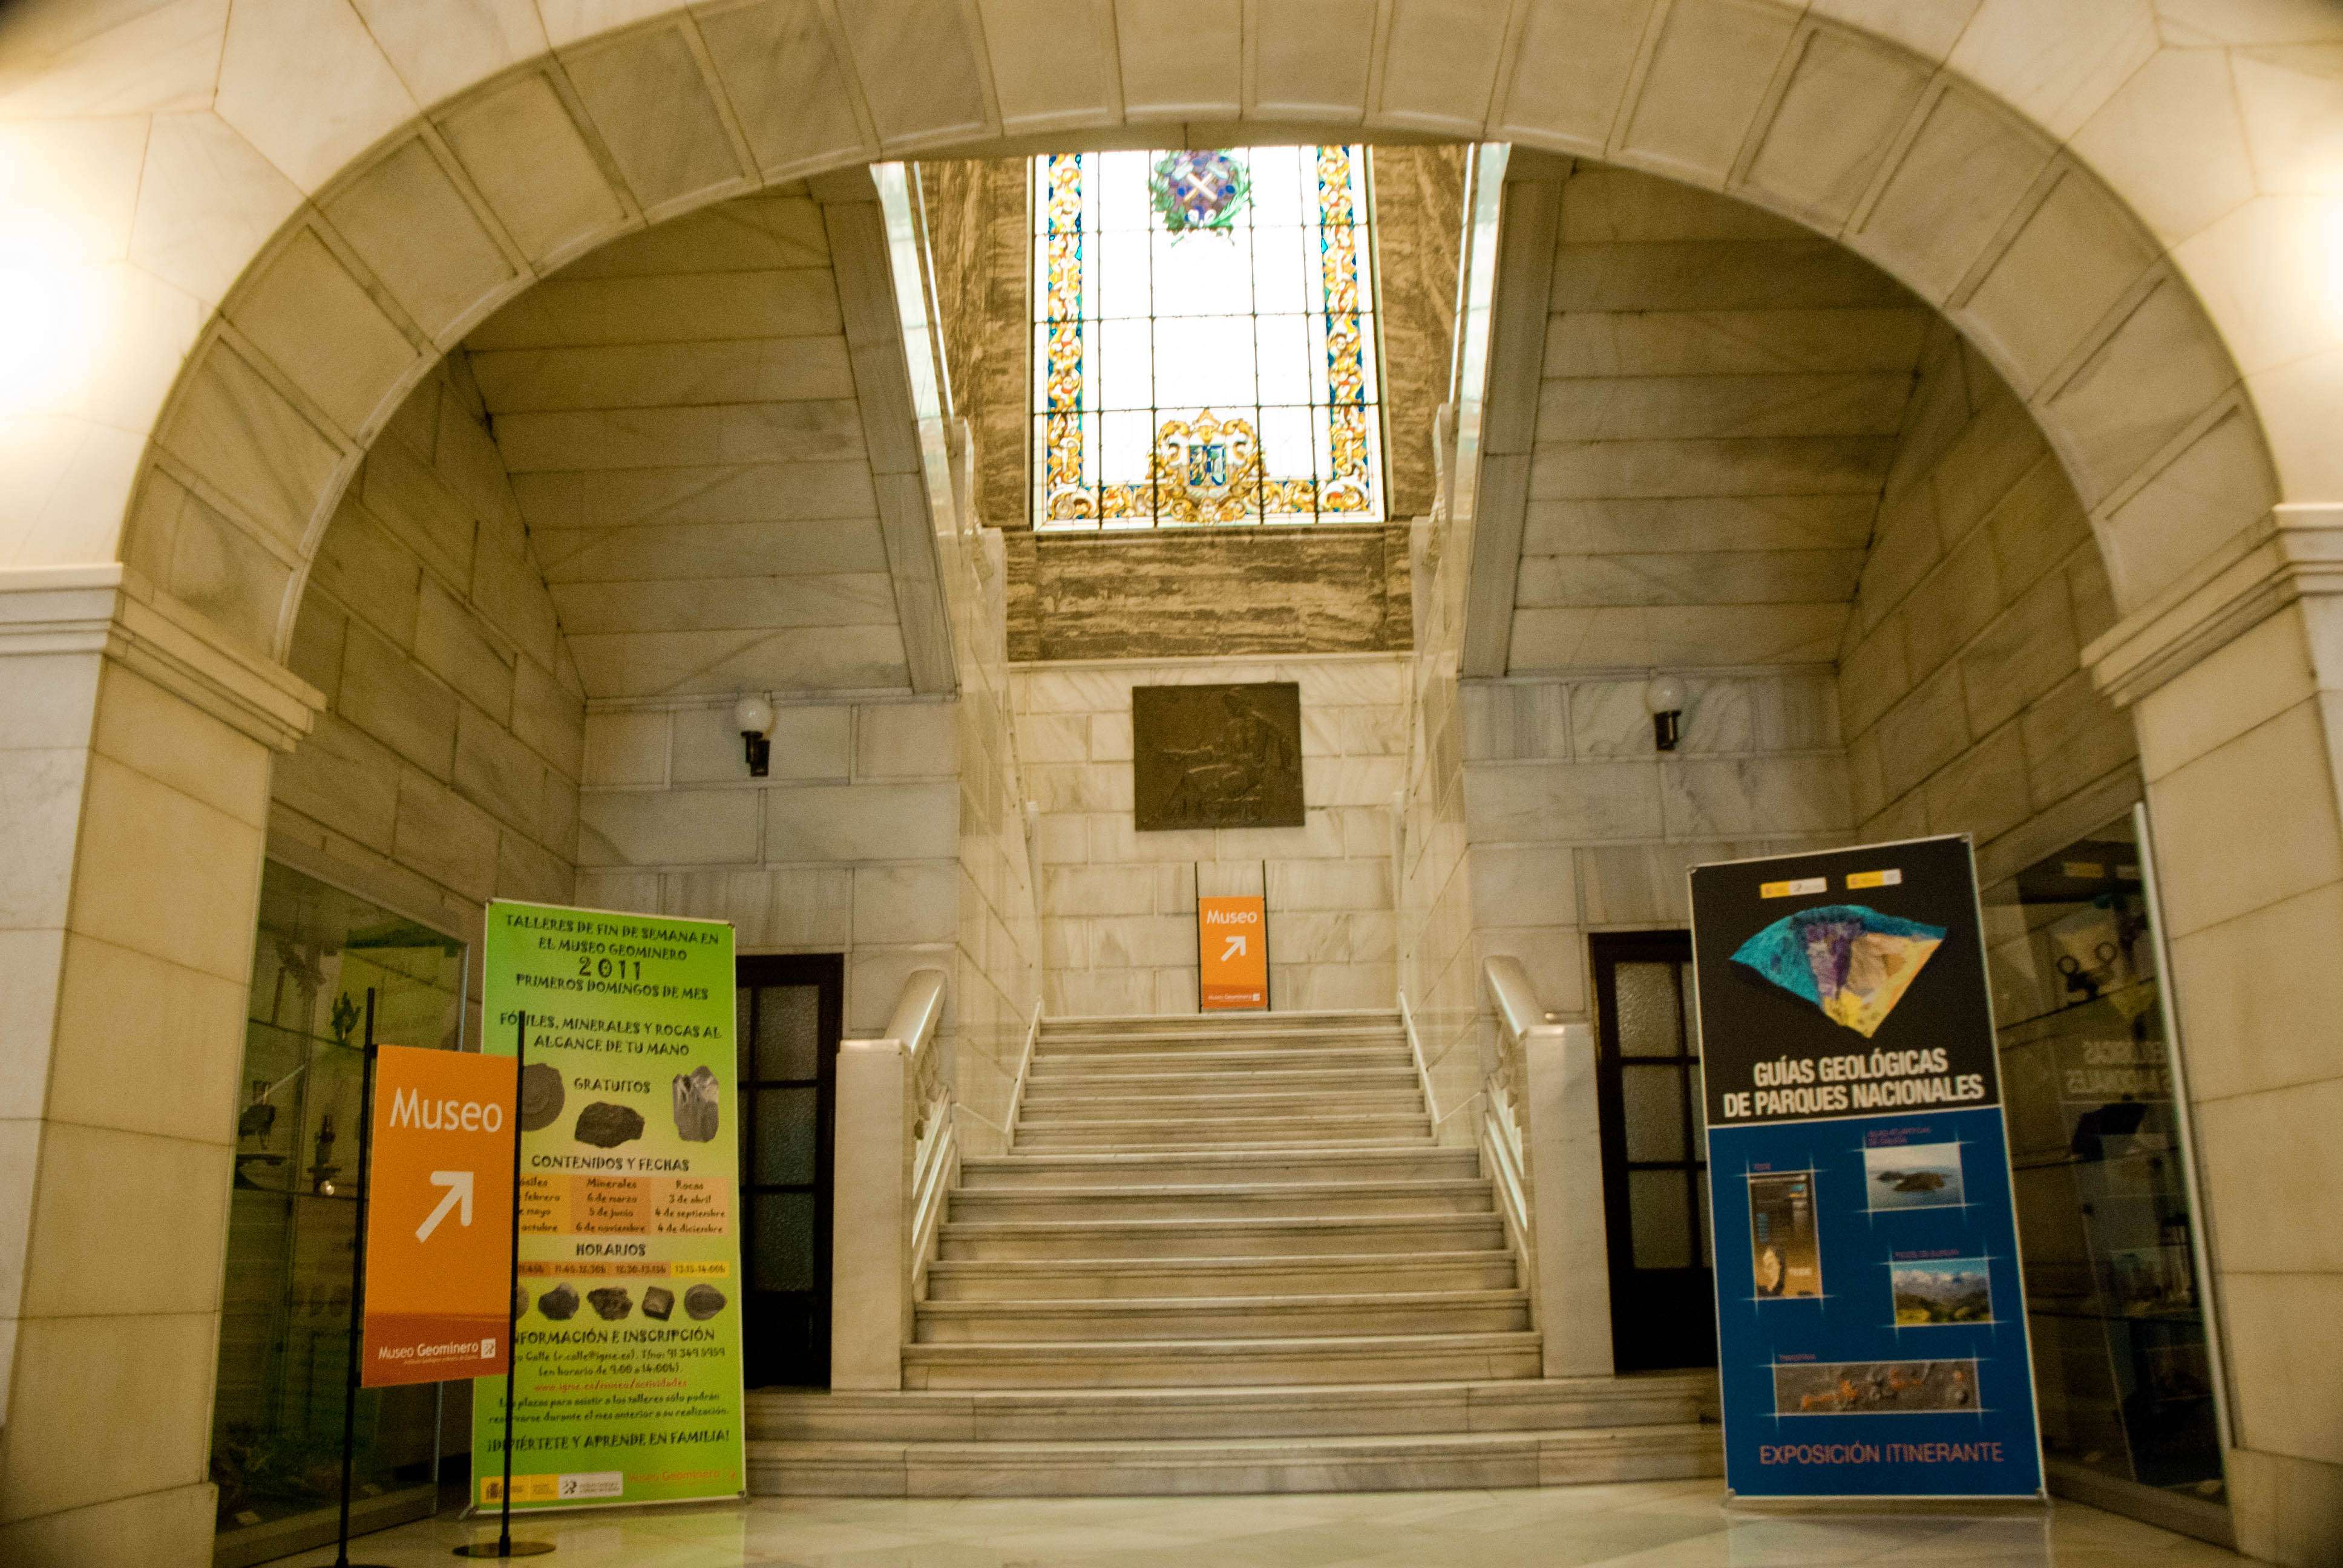 Museo Geológico y Minero - Madrid, Museos-España (2)